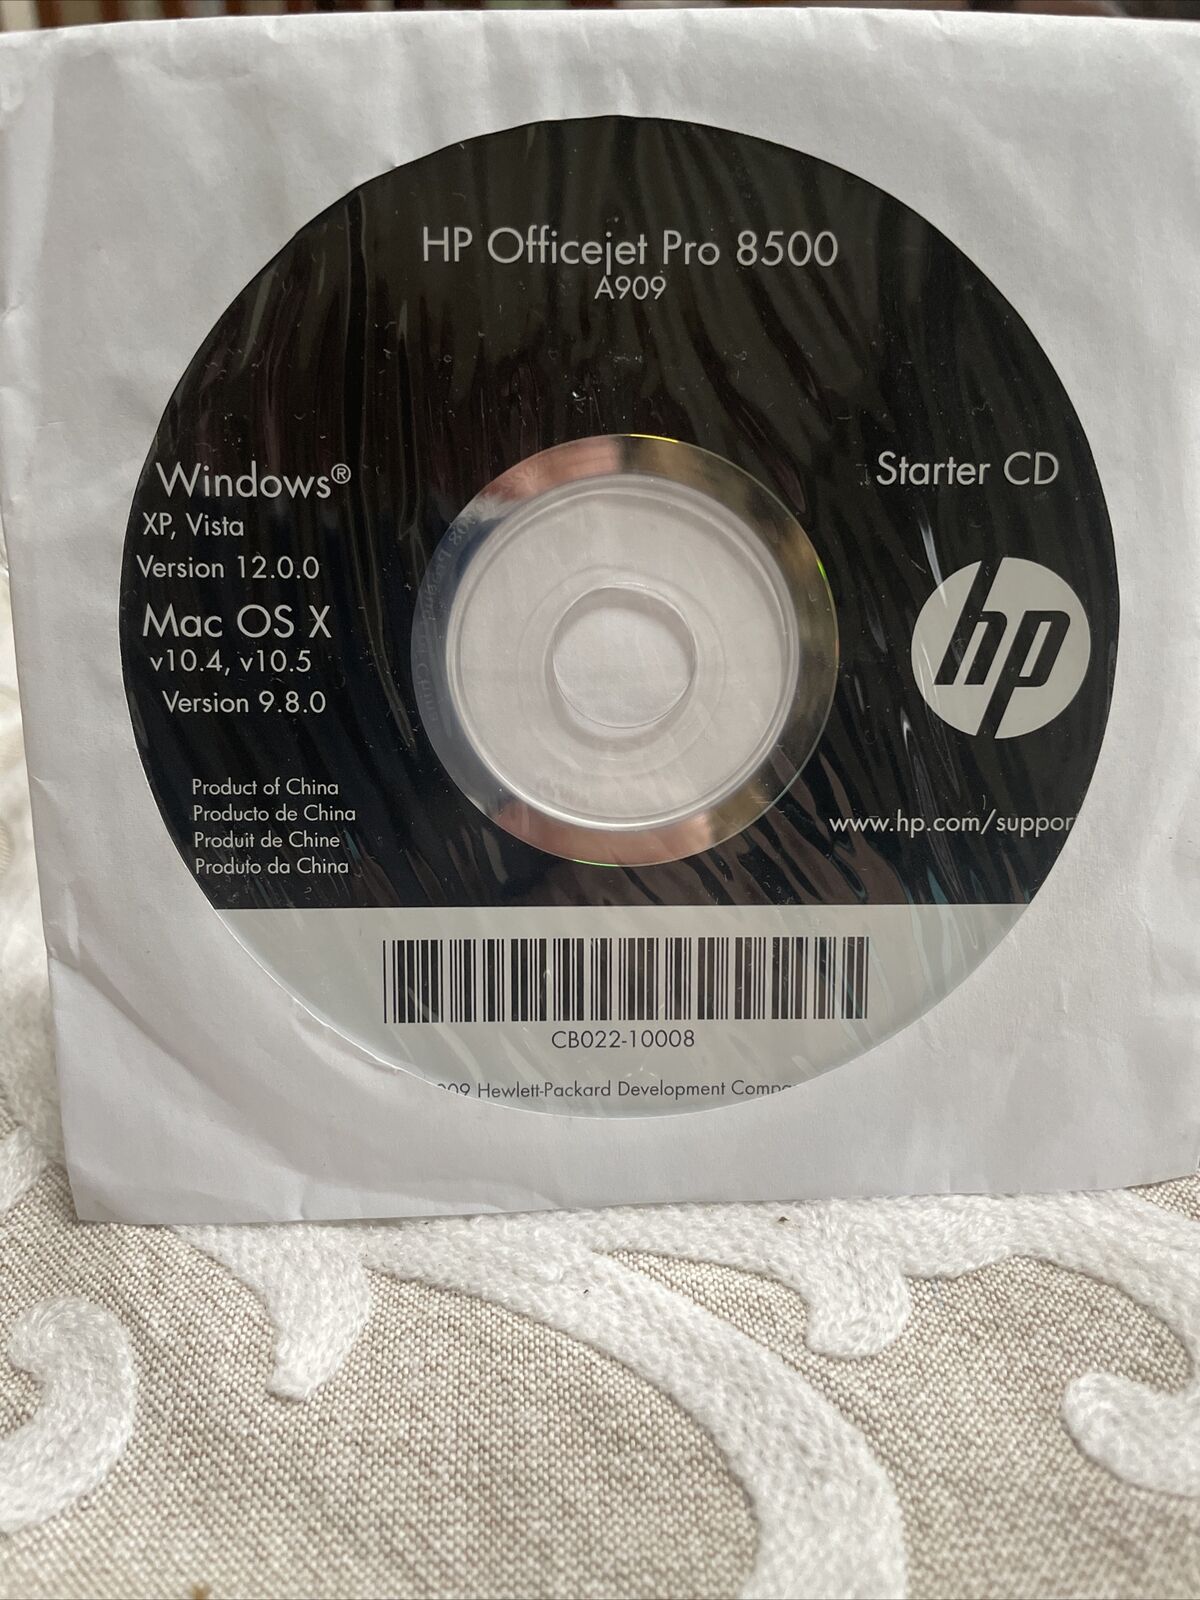 HP Officejet Pro 8500 A909 CD Installer Windows XP, Vista & Mac OS X CD Software